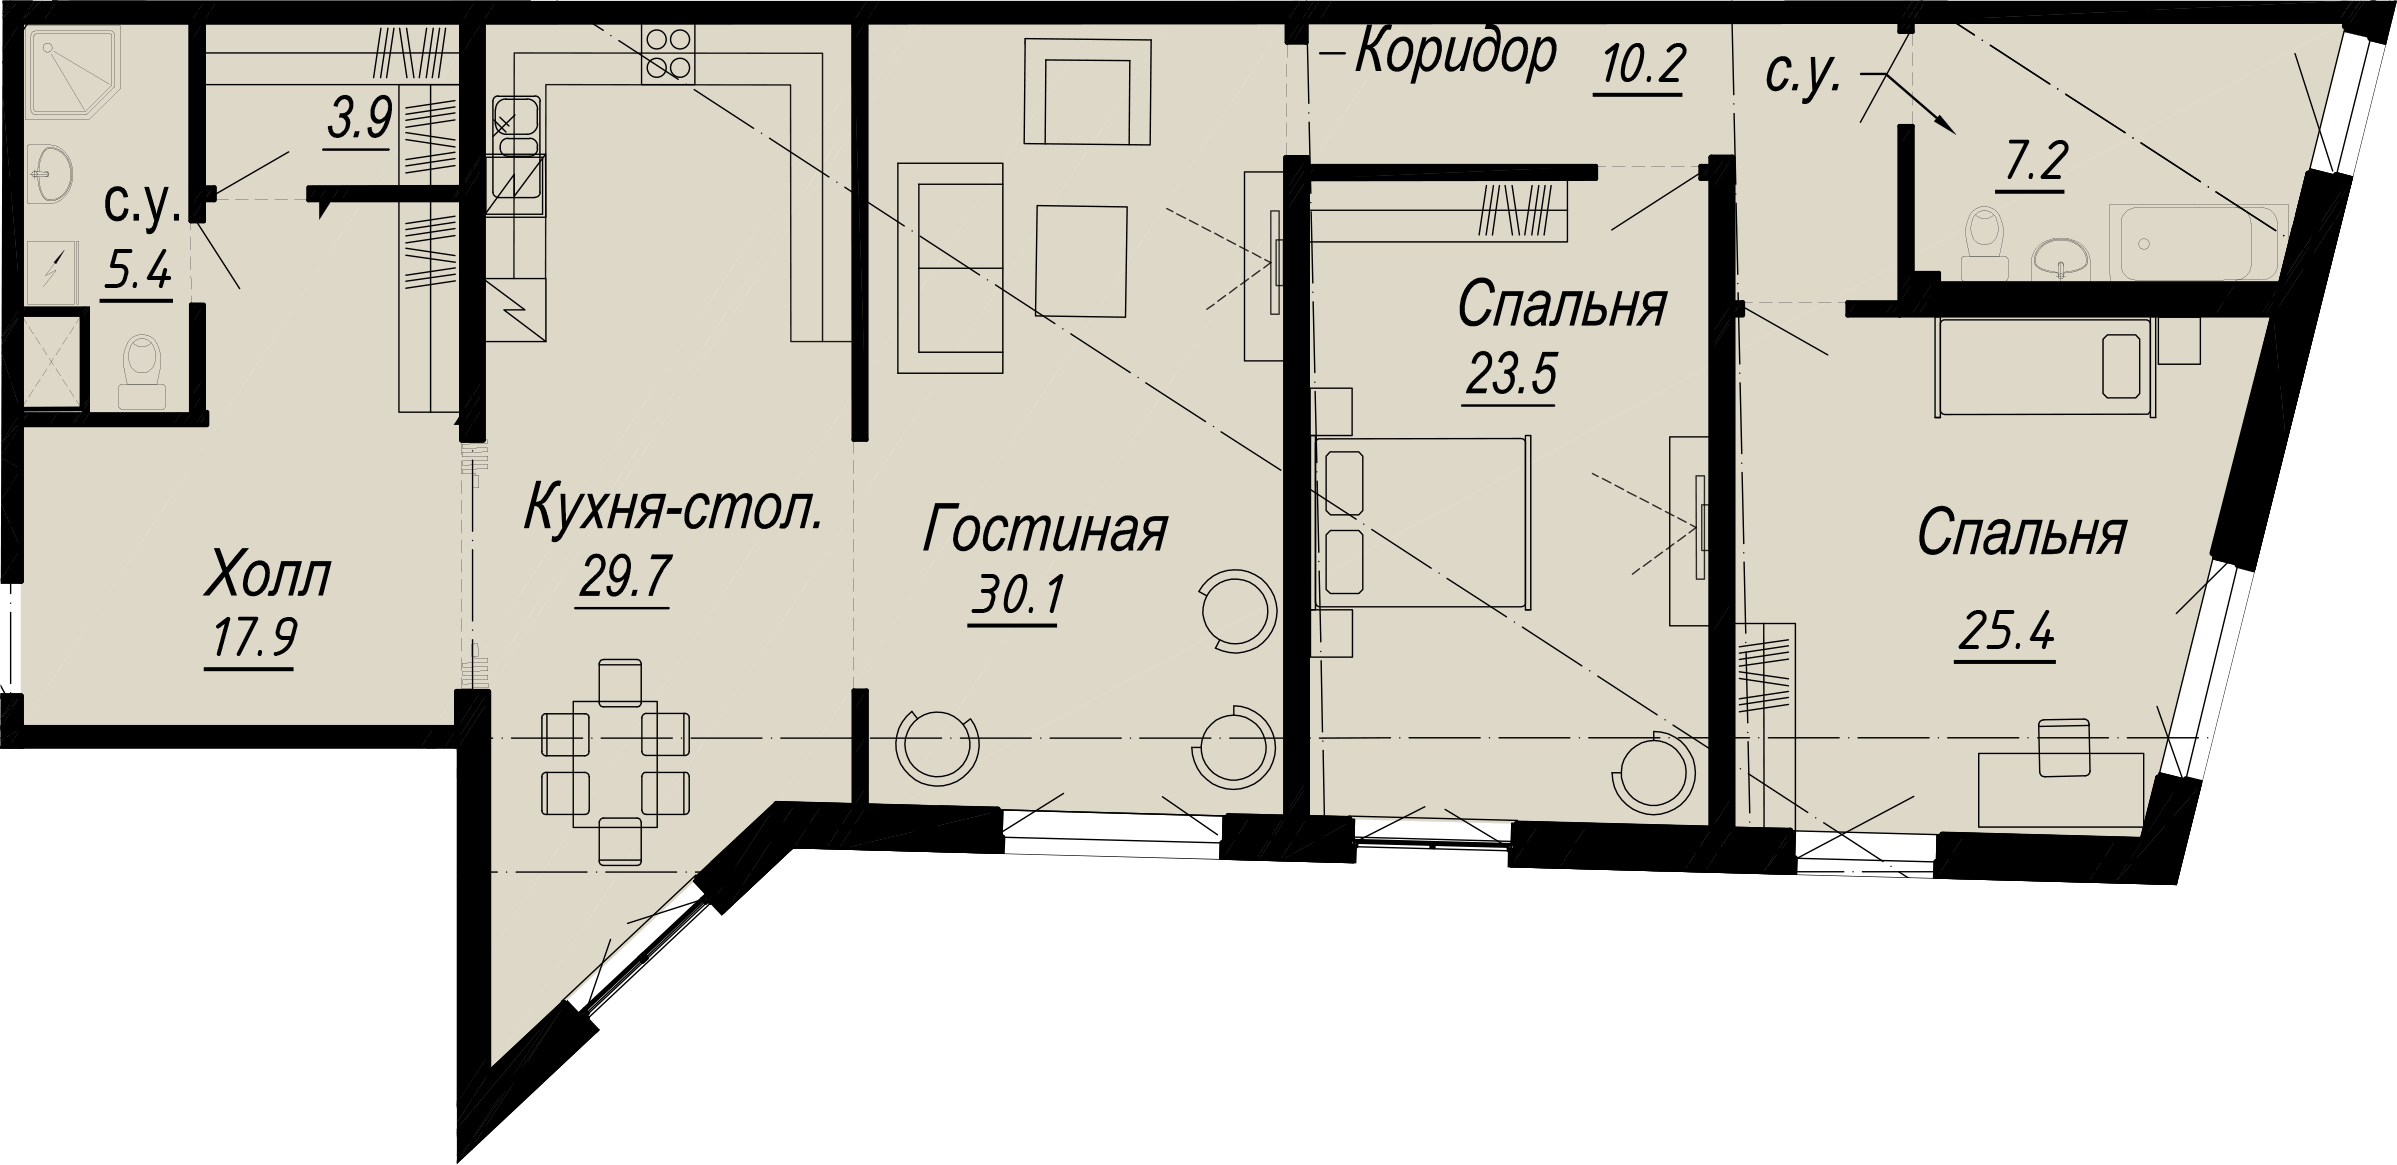 3-комнатная квартира  №7-4 в Meltzer Hall: 155.38 м², этаж 4 - купить в Санкт-Петербурге